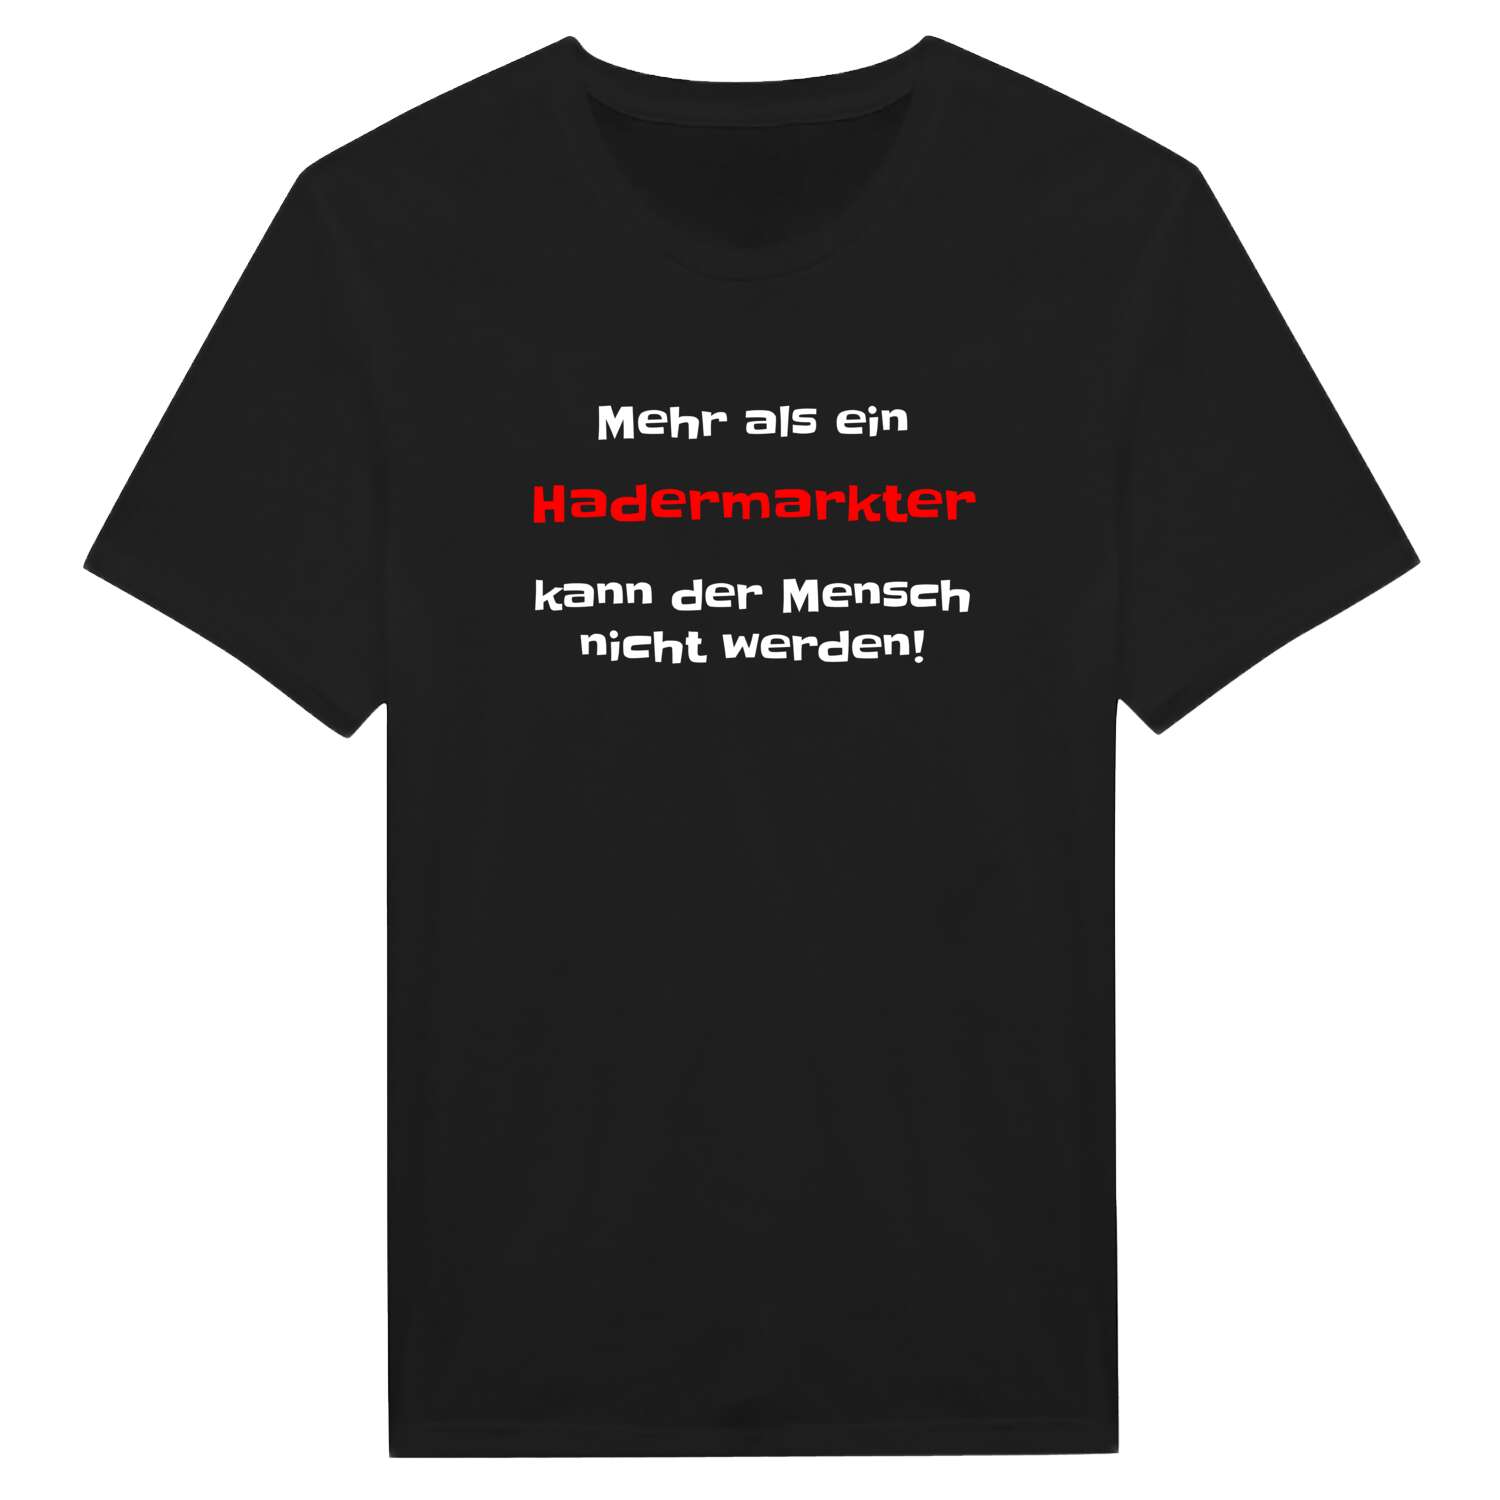 Hadermarkt T-Shirt »Mehr als ein«